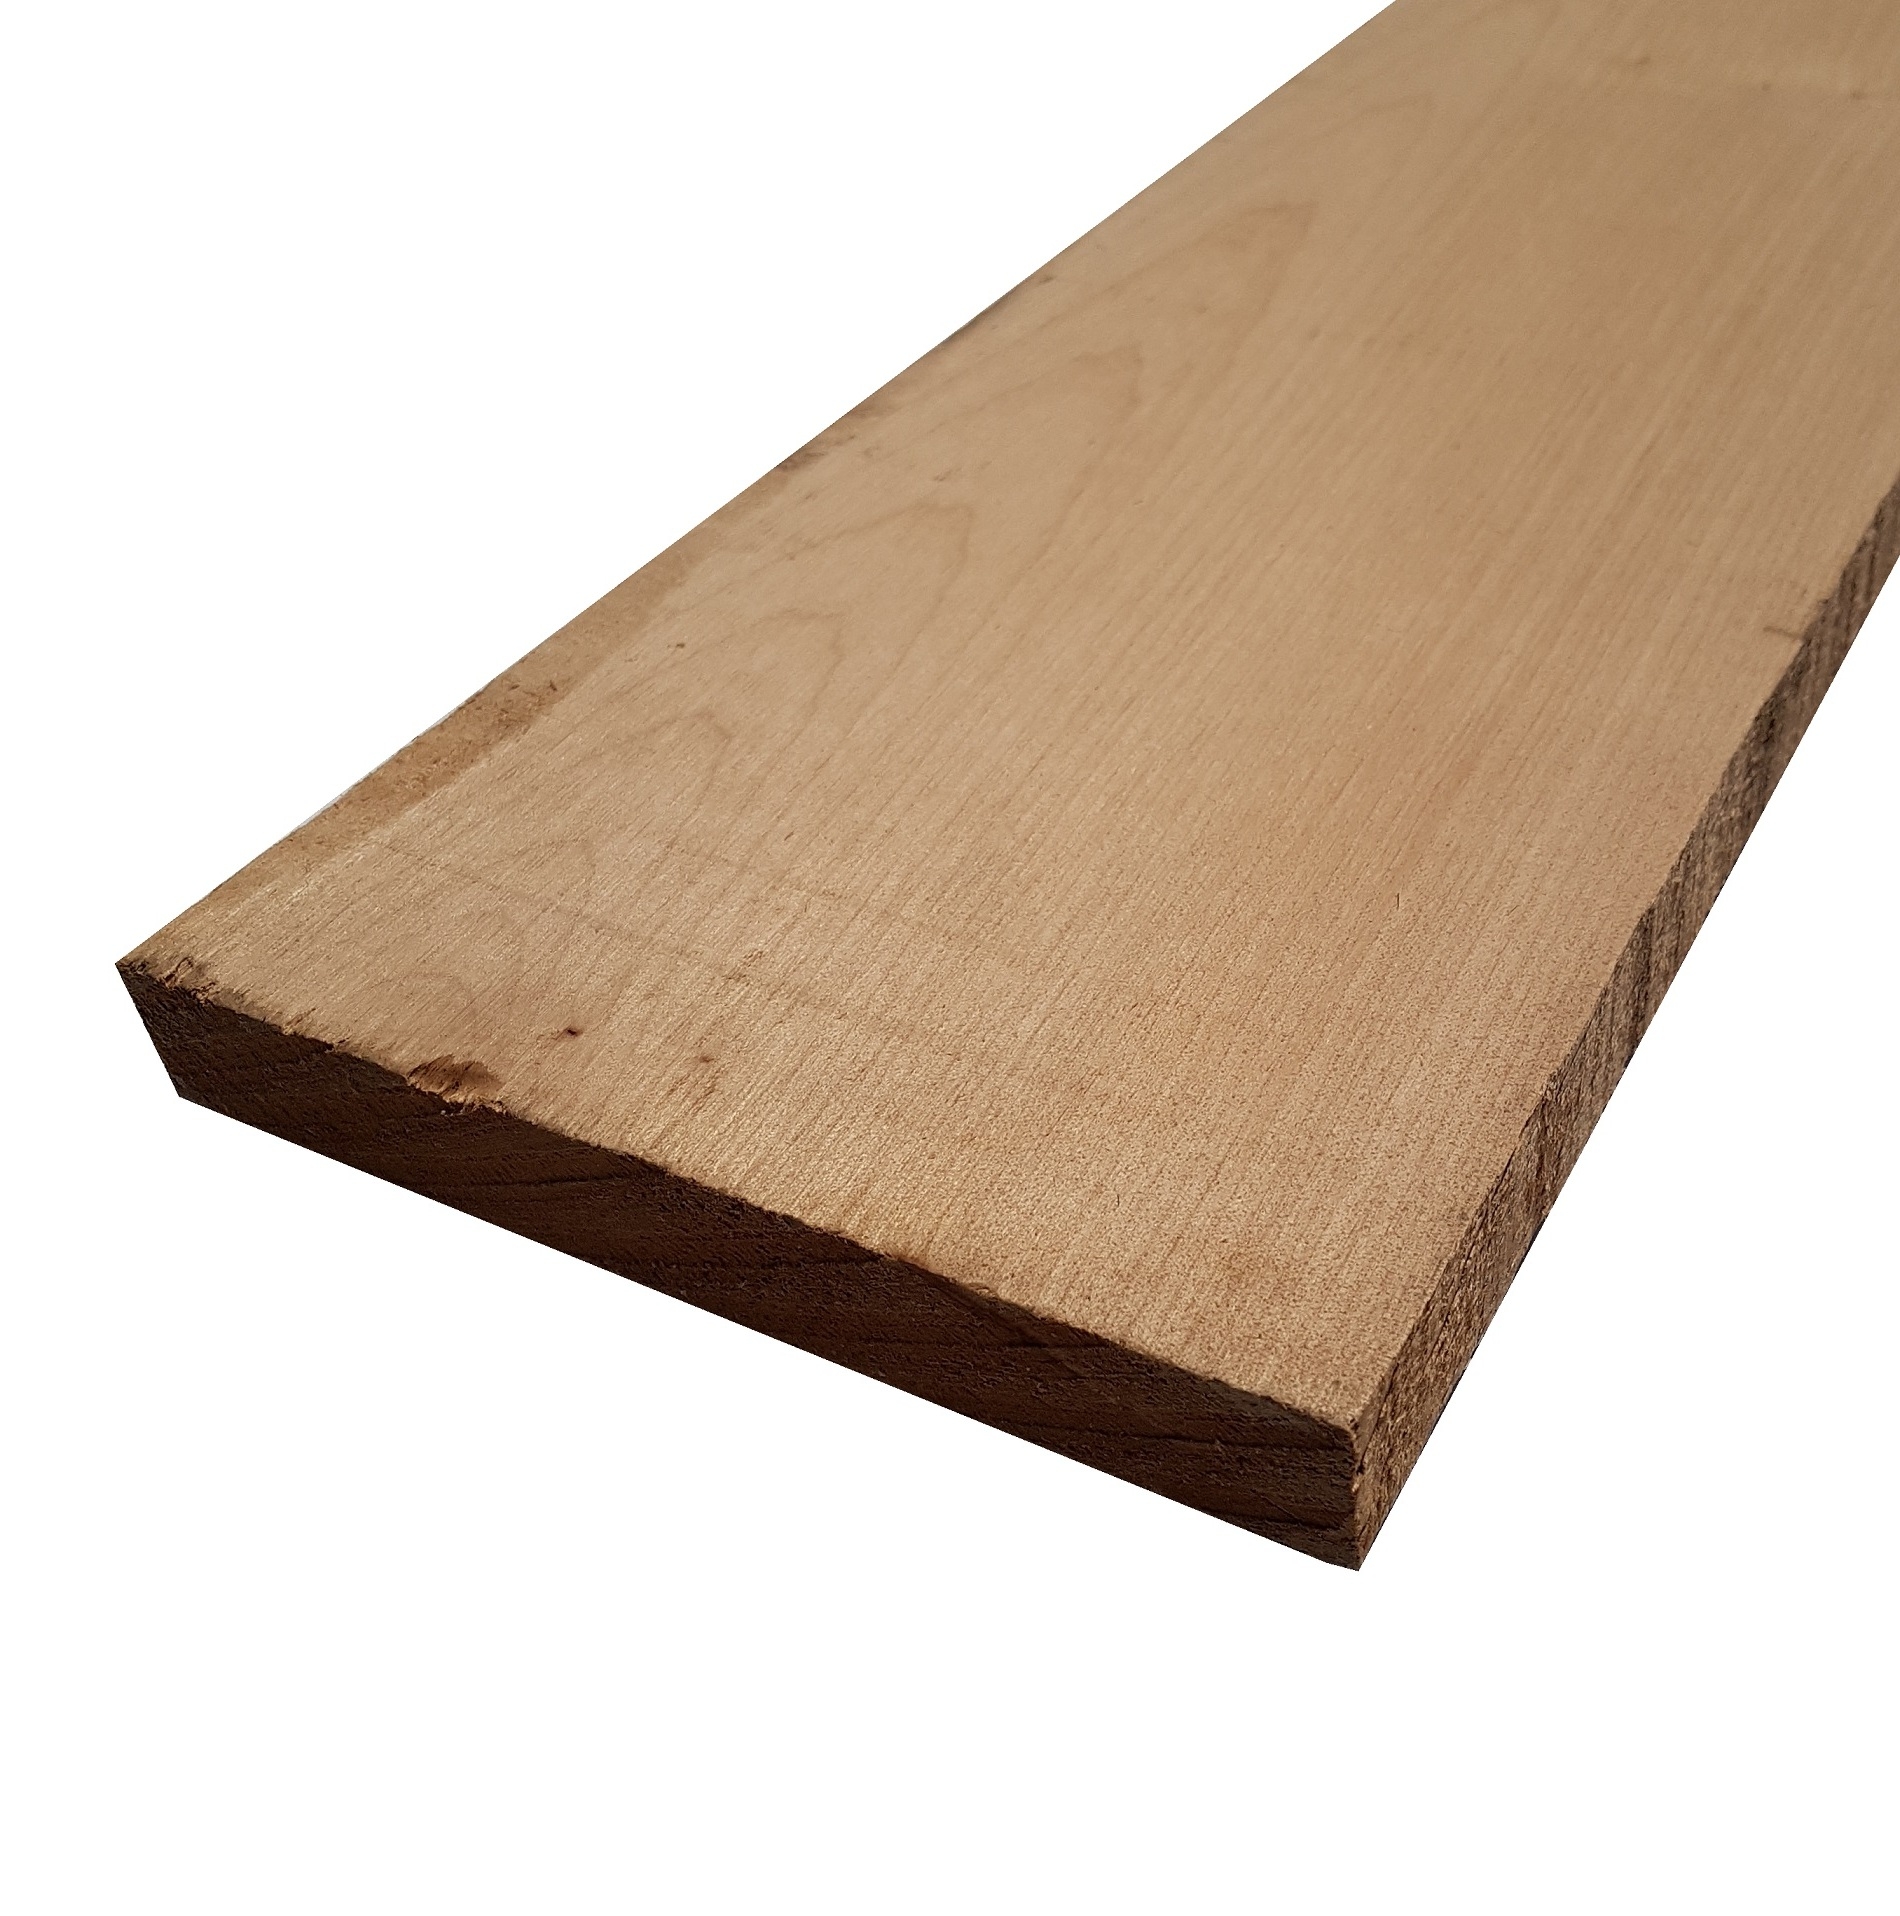 Tavola legno di Acero Pacific Coast Maple Calibrato refilato grezzo mm 24 x 100 x 2450